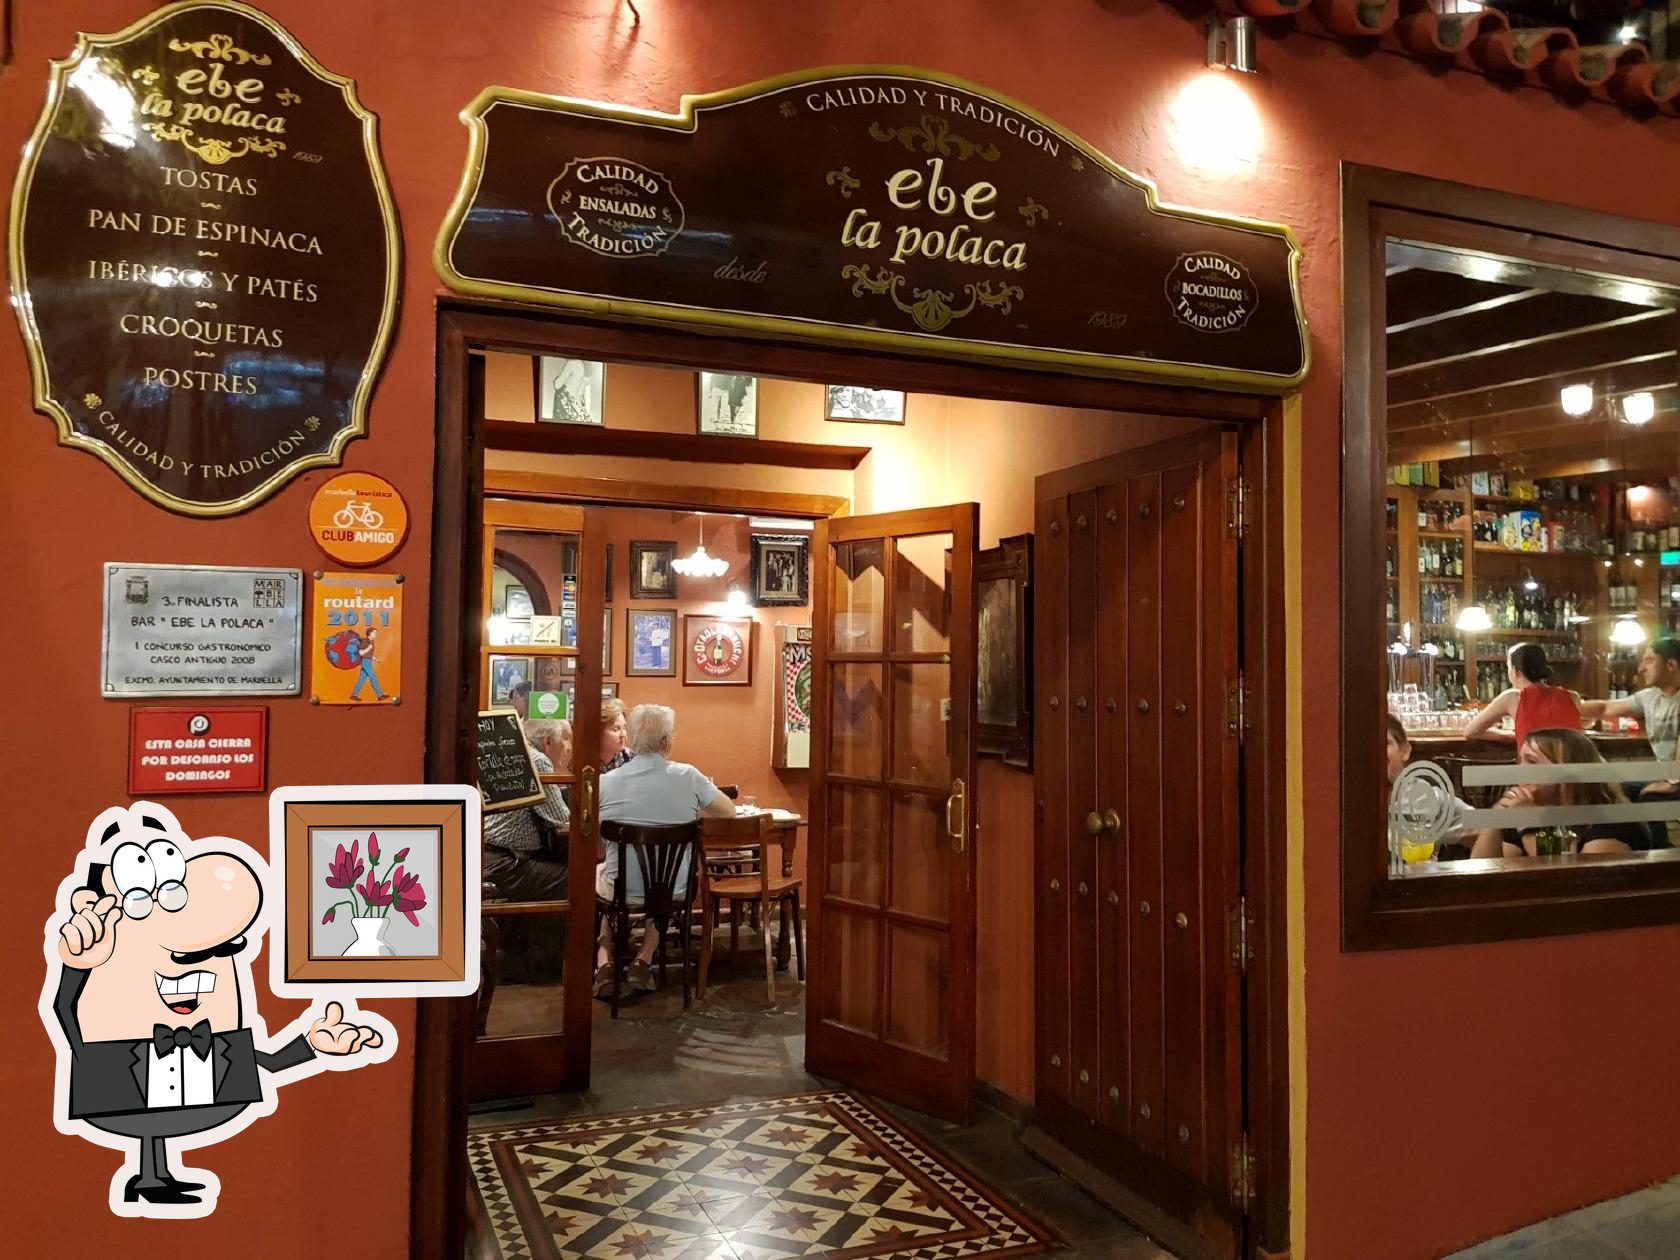 La Polaca in Marbella - Restaurant reviews